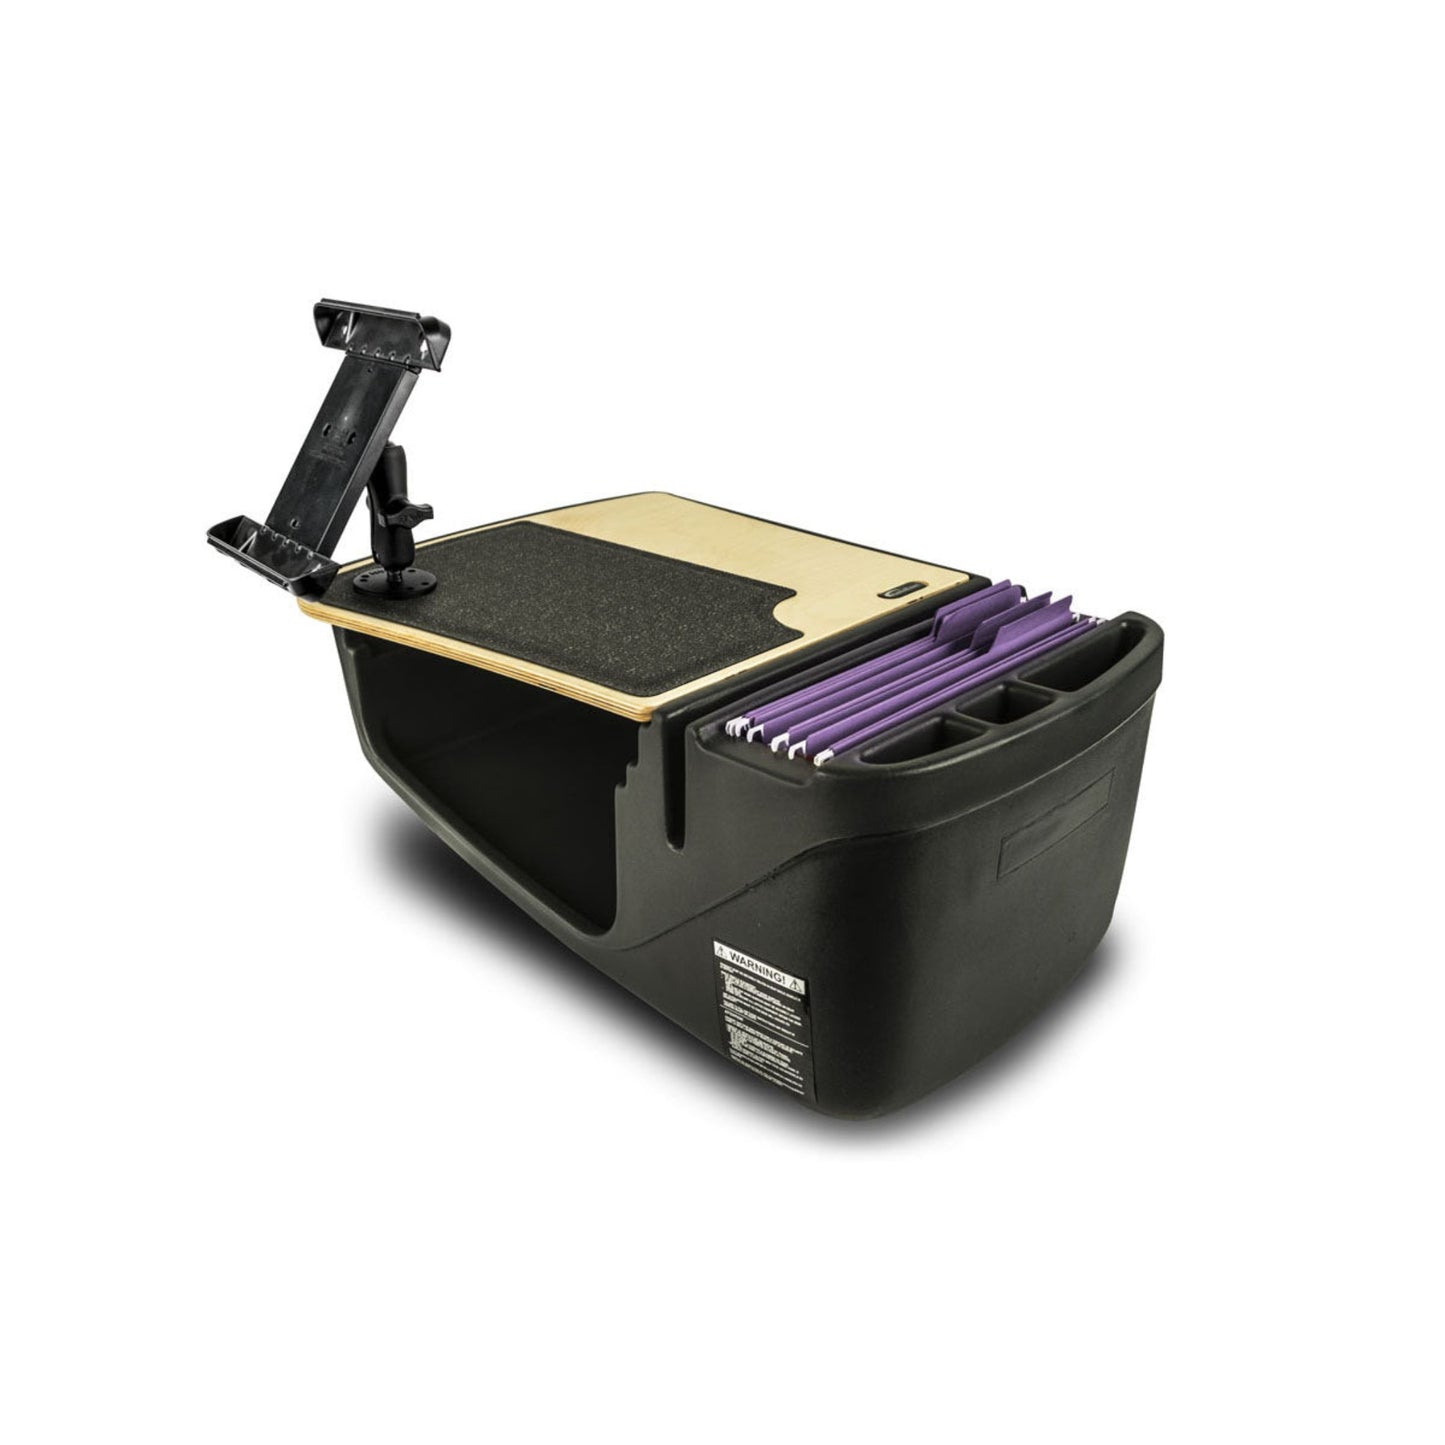 GripMaster Efficiency Vehicle Desk